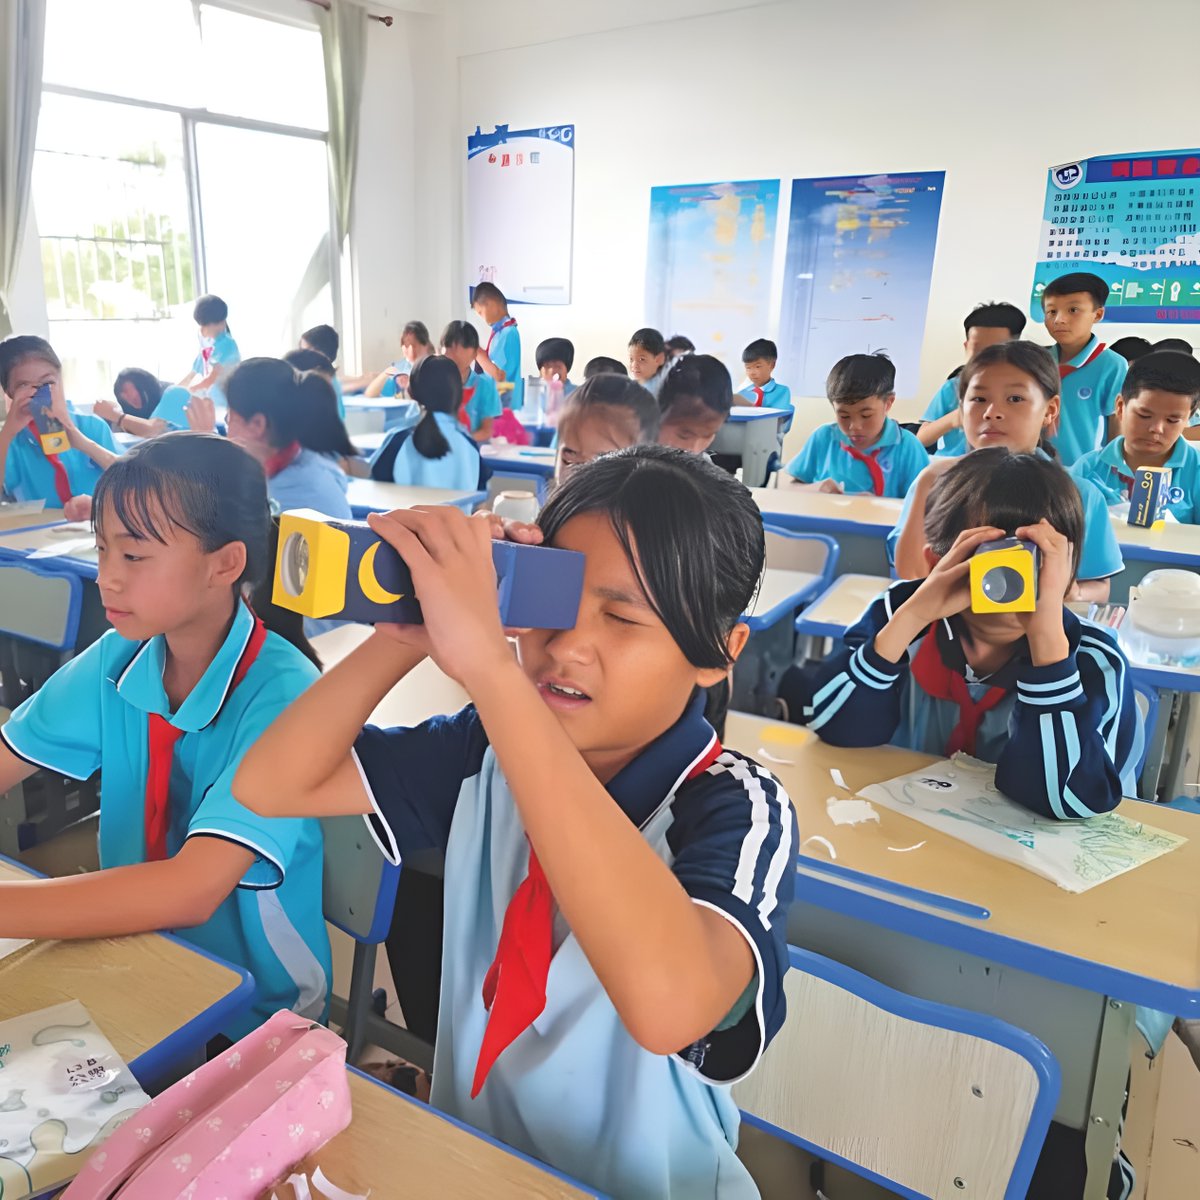 数字支教、虚拟课堂……
这些平台，让甘肃的乡村小学连接上北京的志愿音乐教师。
你或许也能通过数字支教项目，点亮山区儿童的眼睛。

#UNESCO信使杂志 带你了解，中国如何用在线工具提升偏远地区的教育水平➡️courier.unesco.org/zh/articles/za…

#教育技术 #支教